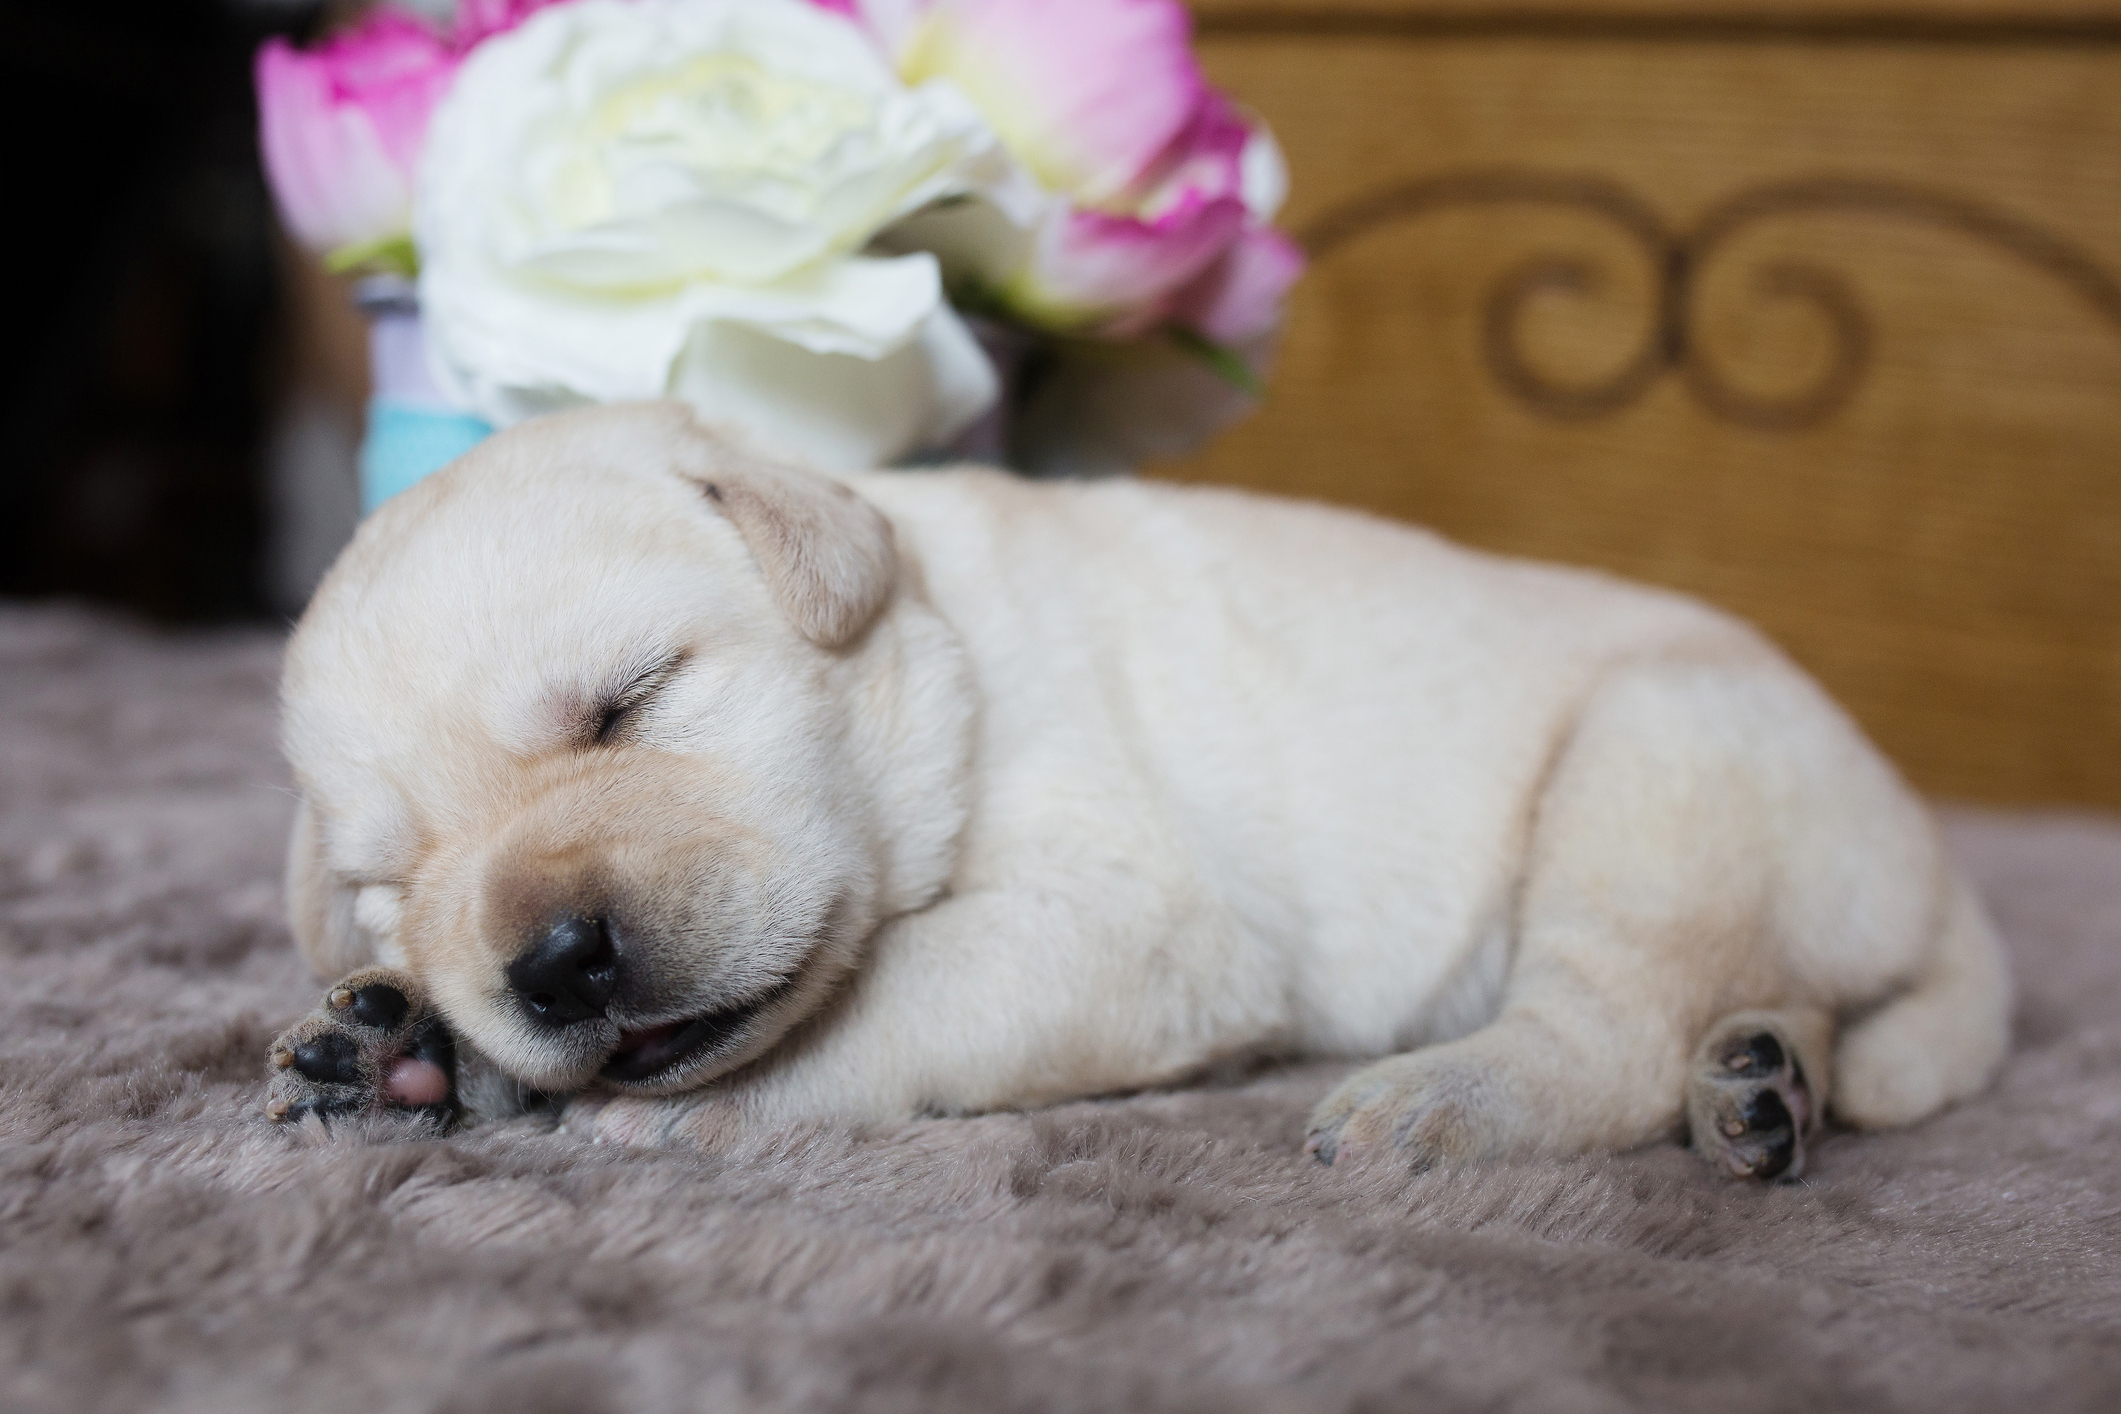 A Labrador puppy asleep on a rug